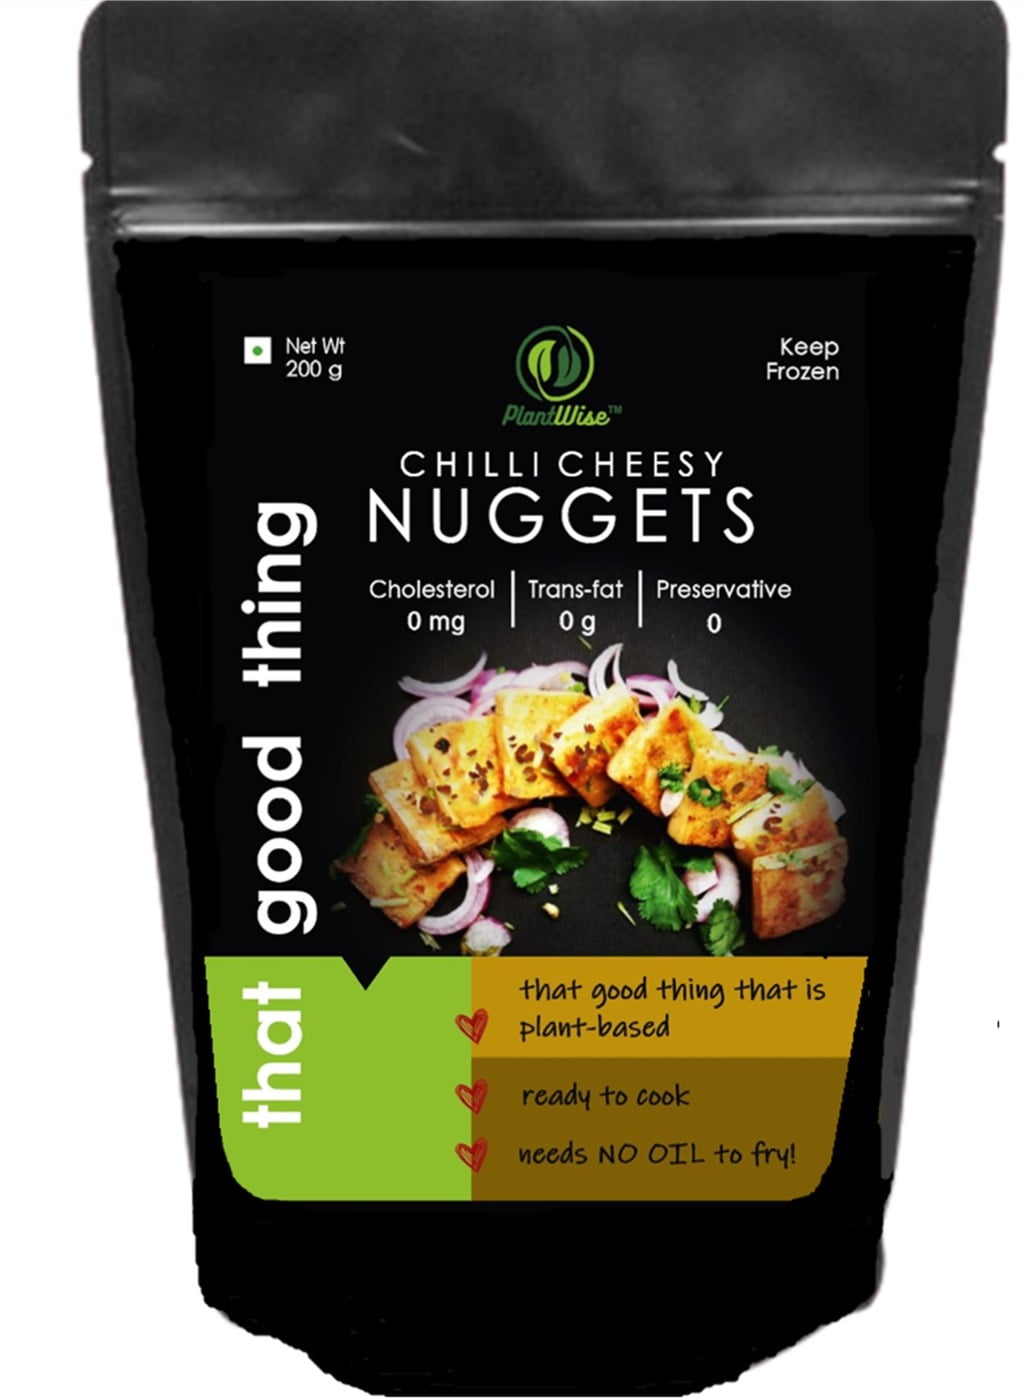 Chilli Cheesy Nuggets - No Oil Needed